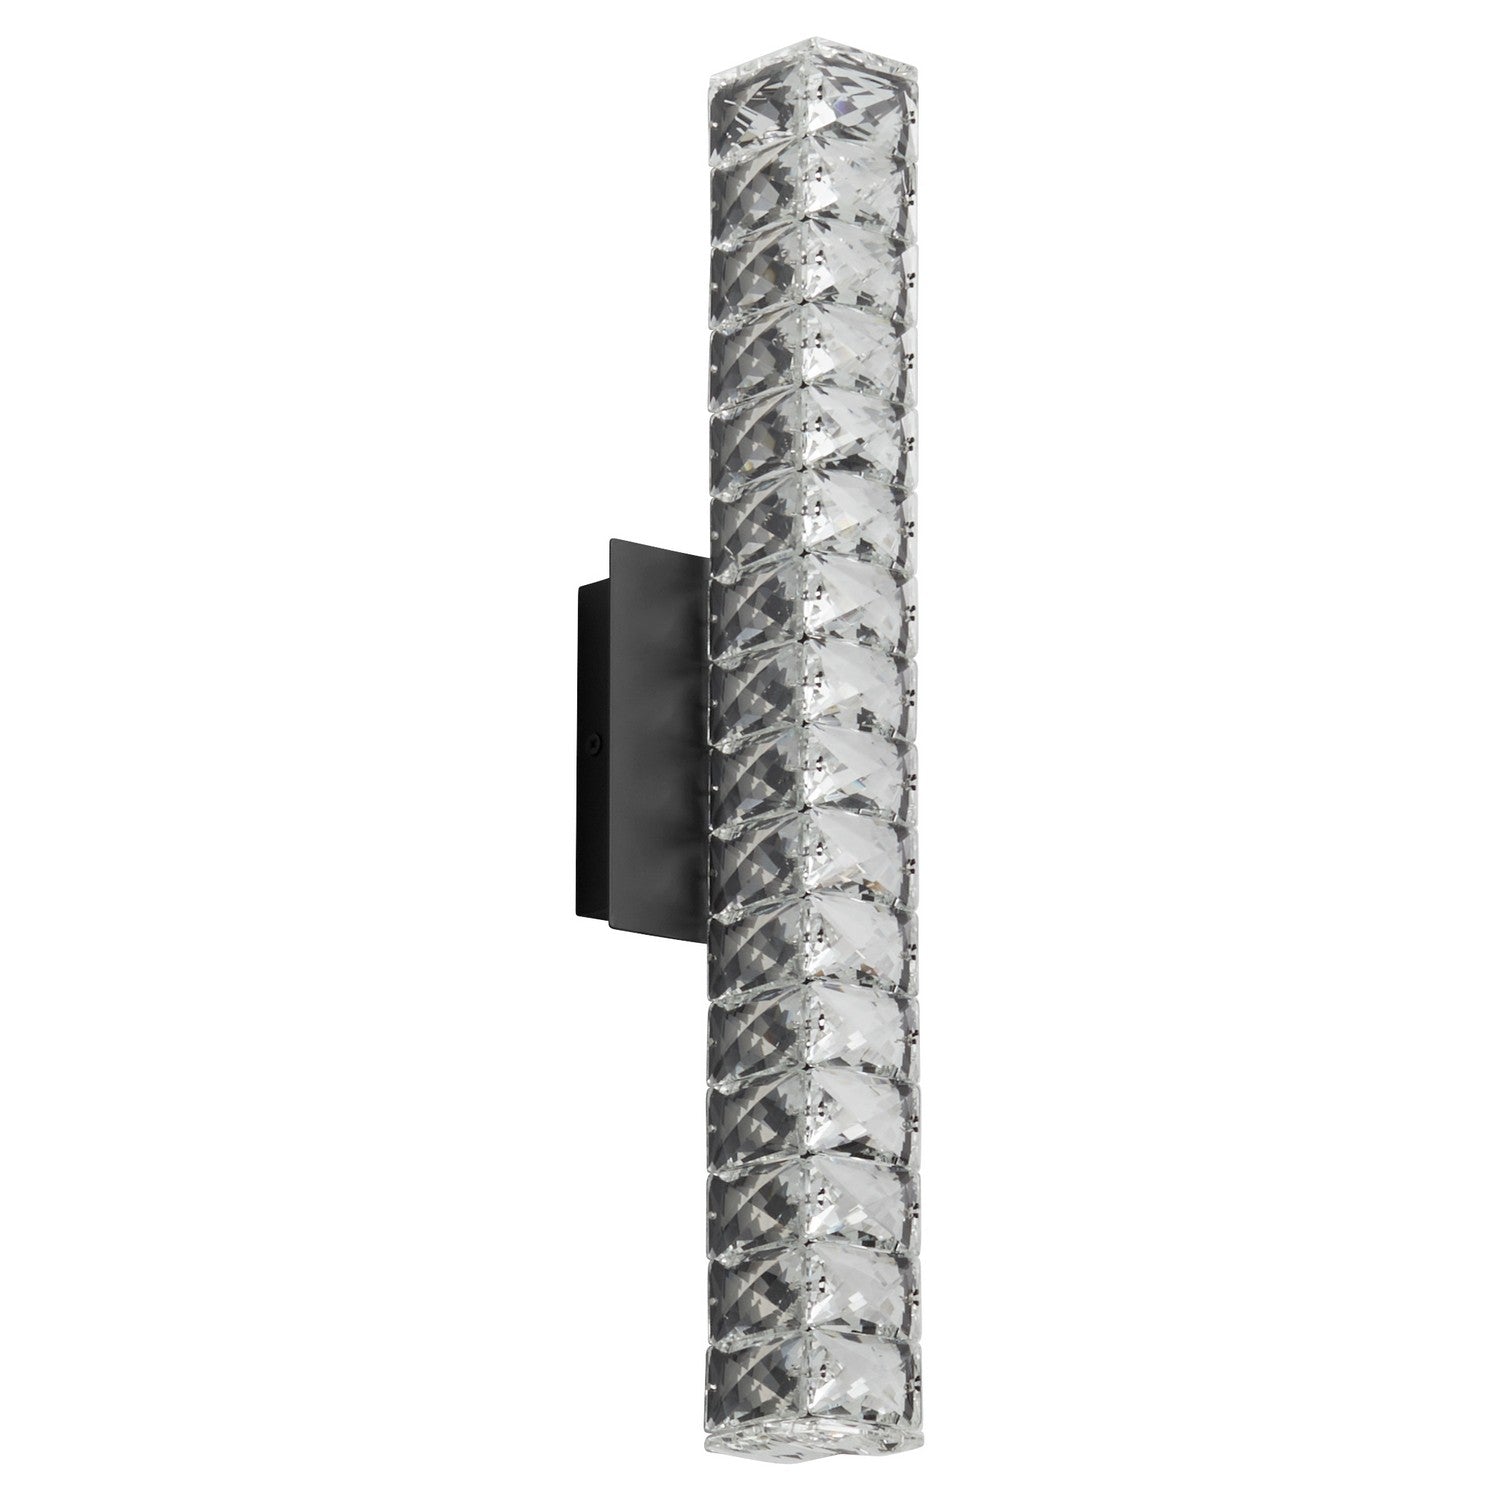 Oxygen Elan 3-573-15 Modern Vanity LED Wall Light Fixture- Black